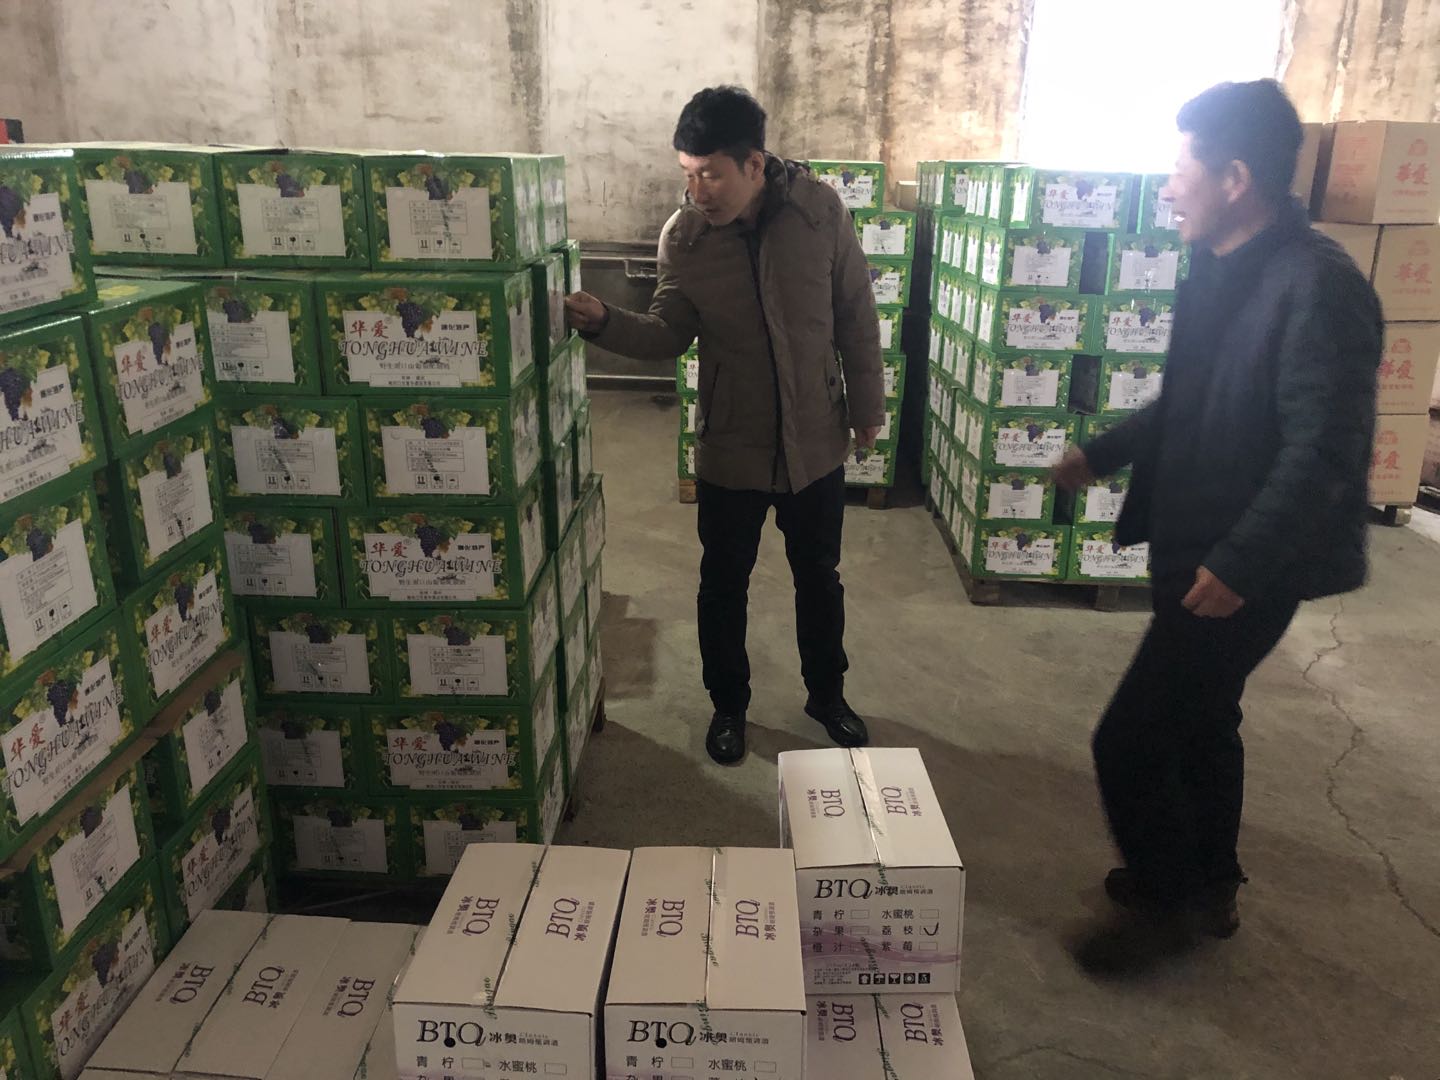 梅河口市某酒业有限公司生产冰奥紫莓朗姆酒（预调酒）涉嫌超范围、超限量使用食品添加剂